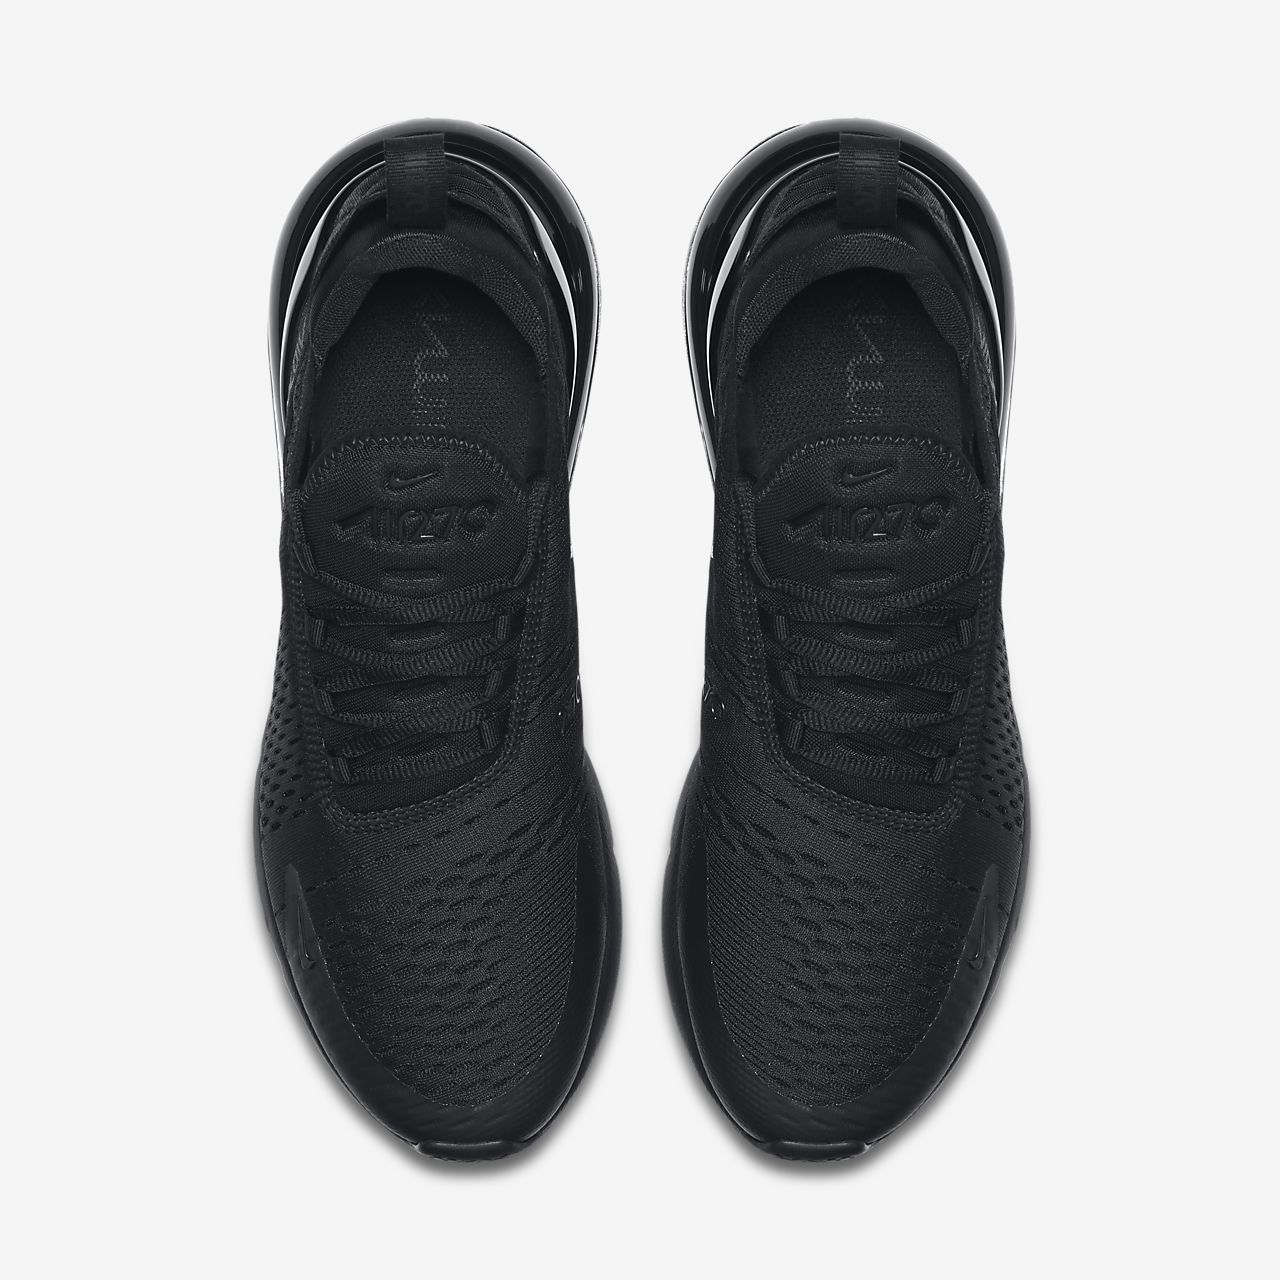 Nike Air Max 270 - Sneakers - Sort | DK-91296